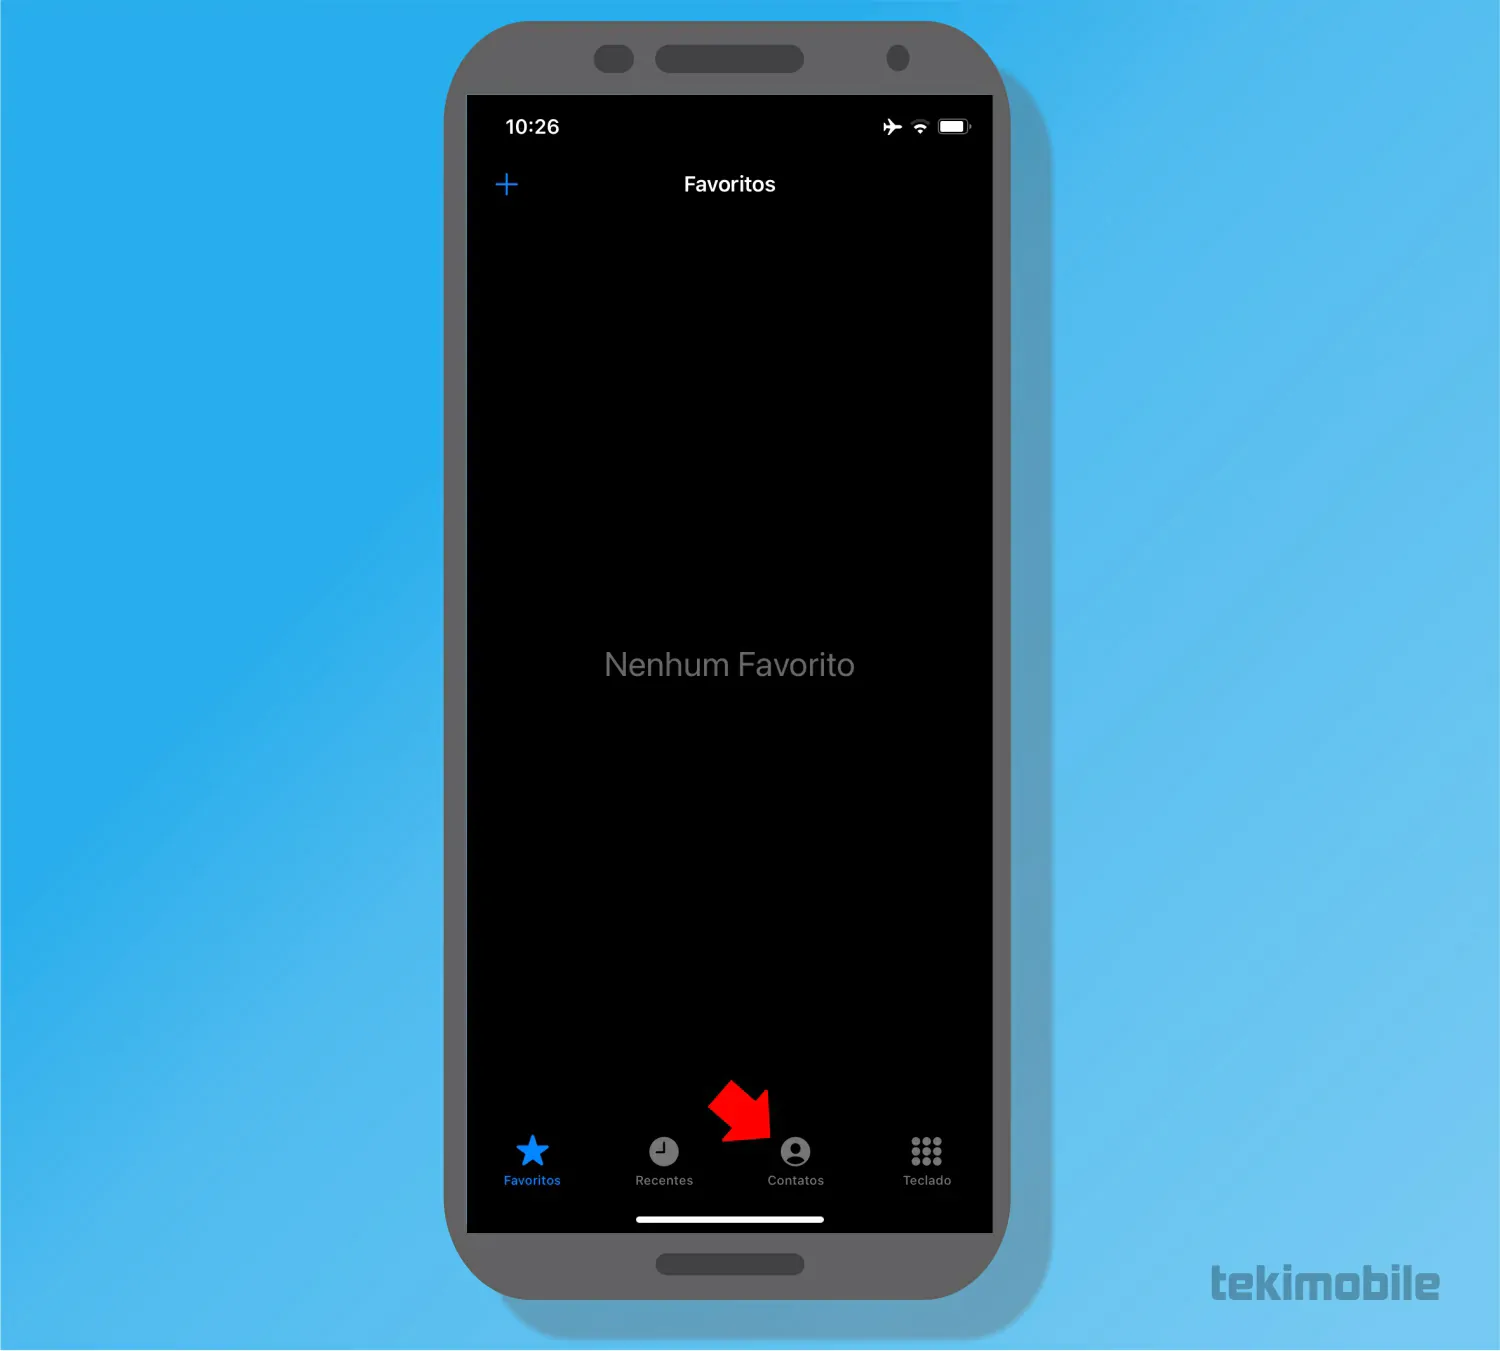 toque sobre Contatos - Como bloquear contatos e ligações no iPhone